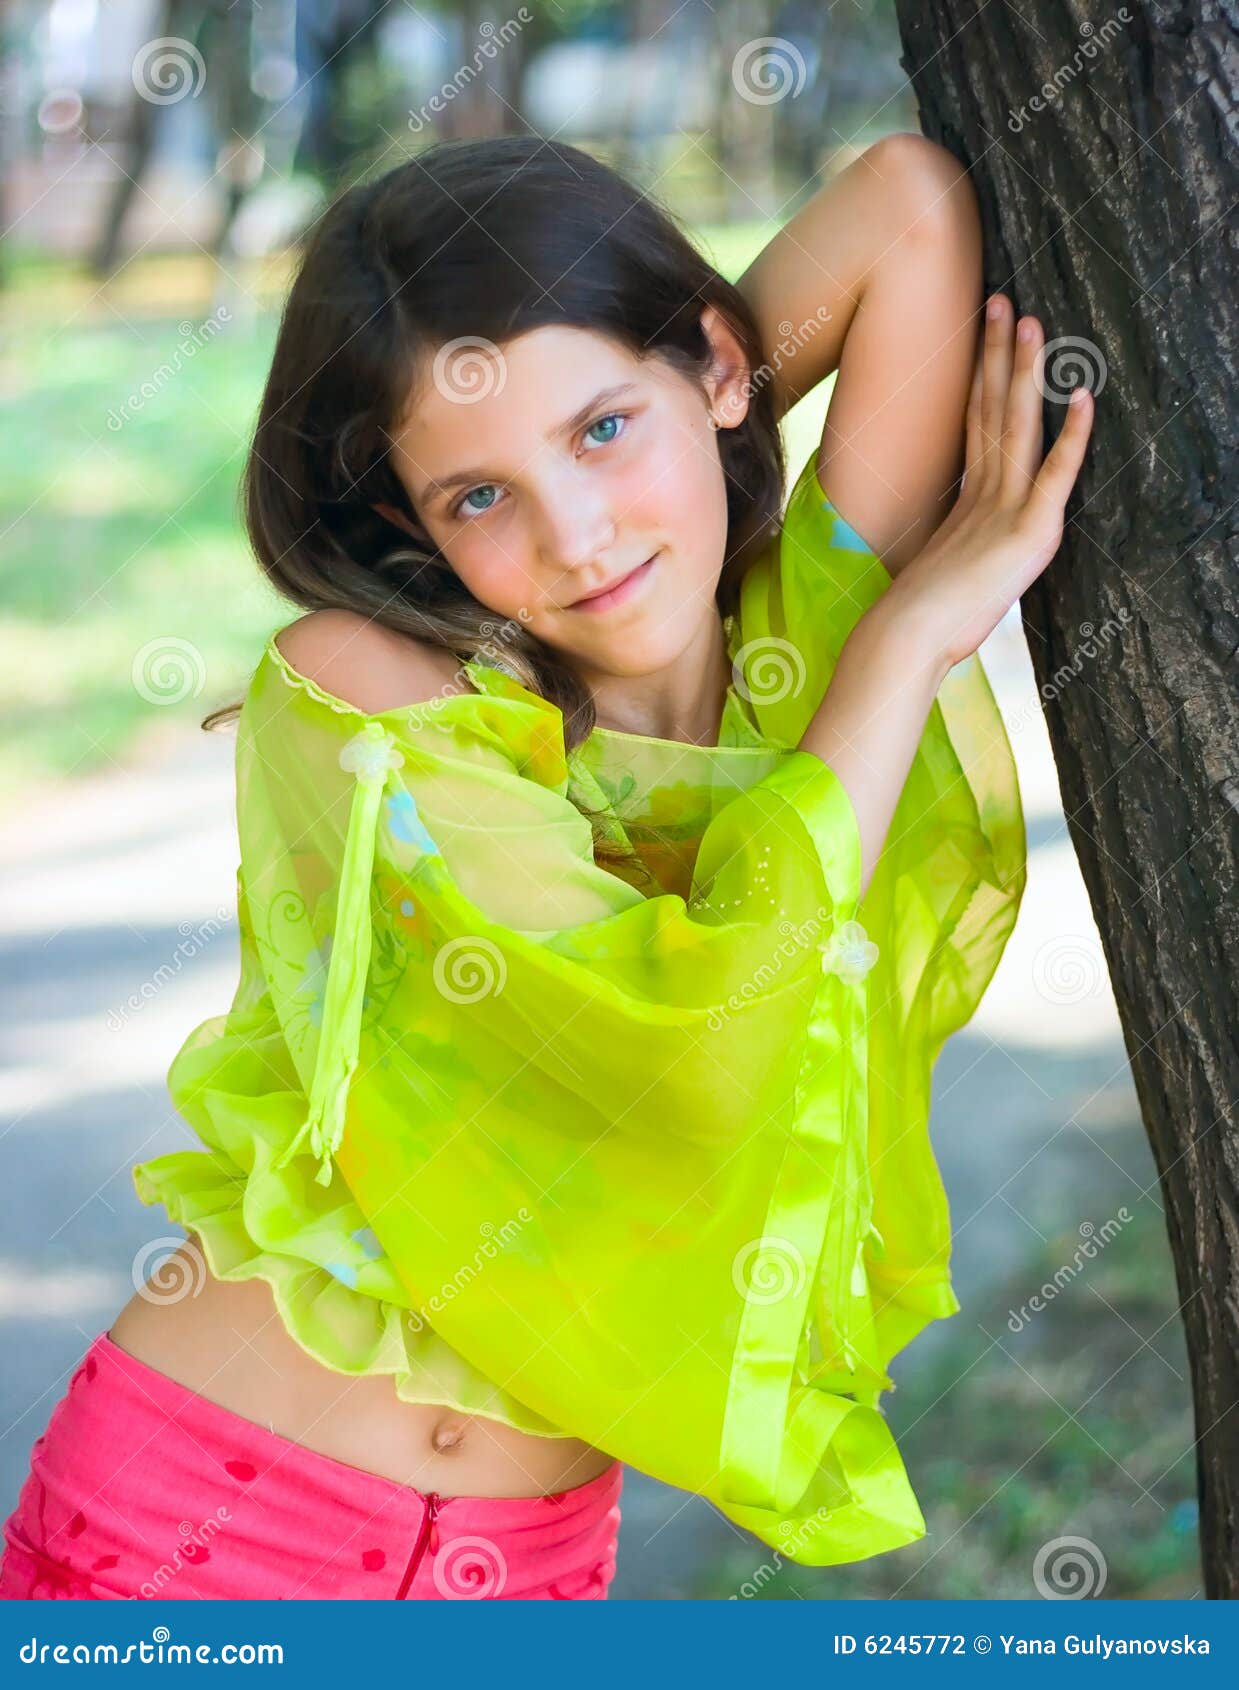 Teenagers: Beauty Teen Girl On Nature - Stock Image 